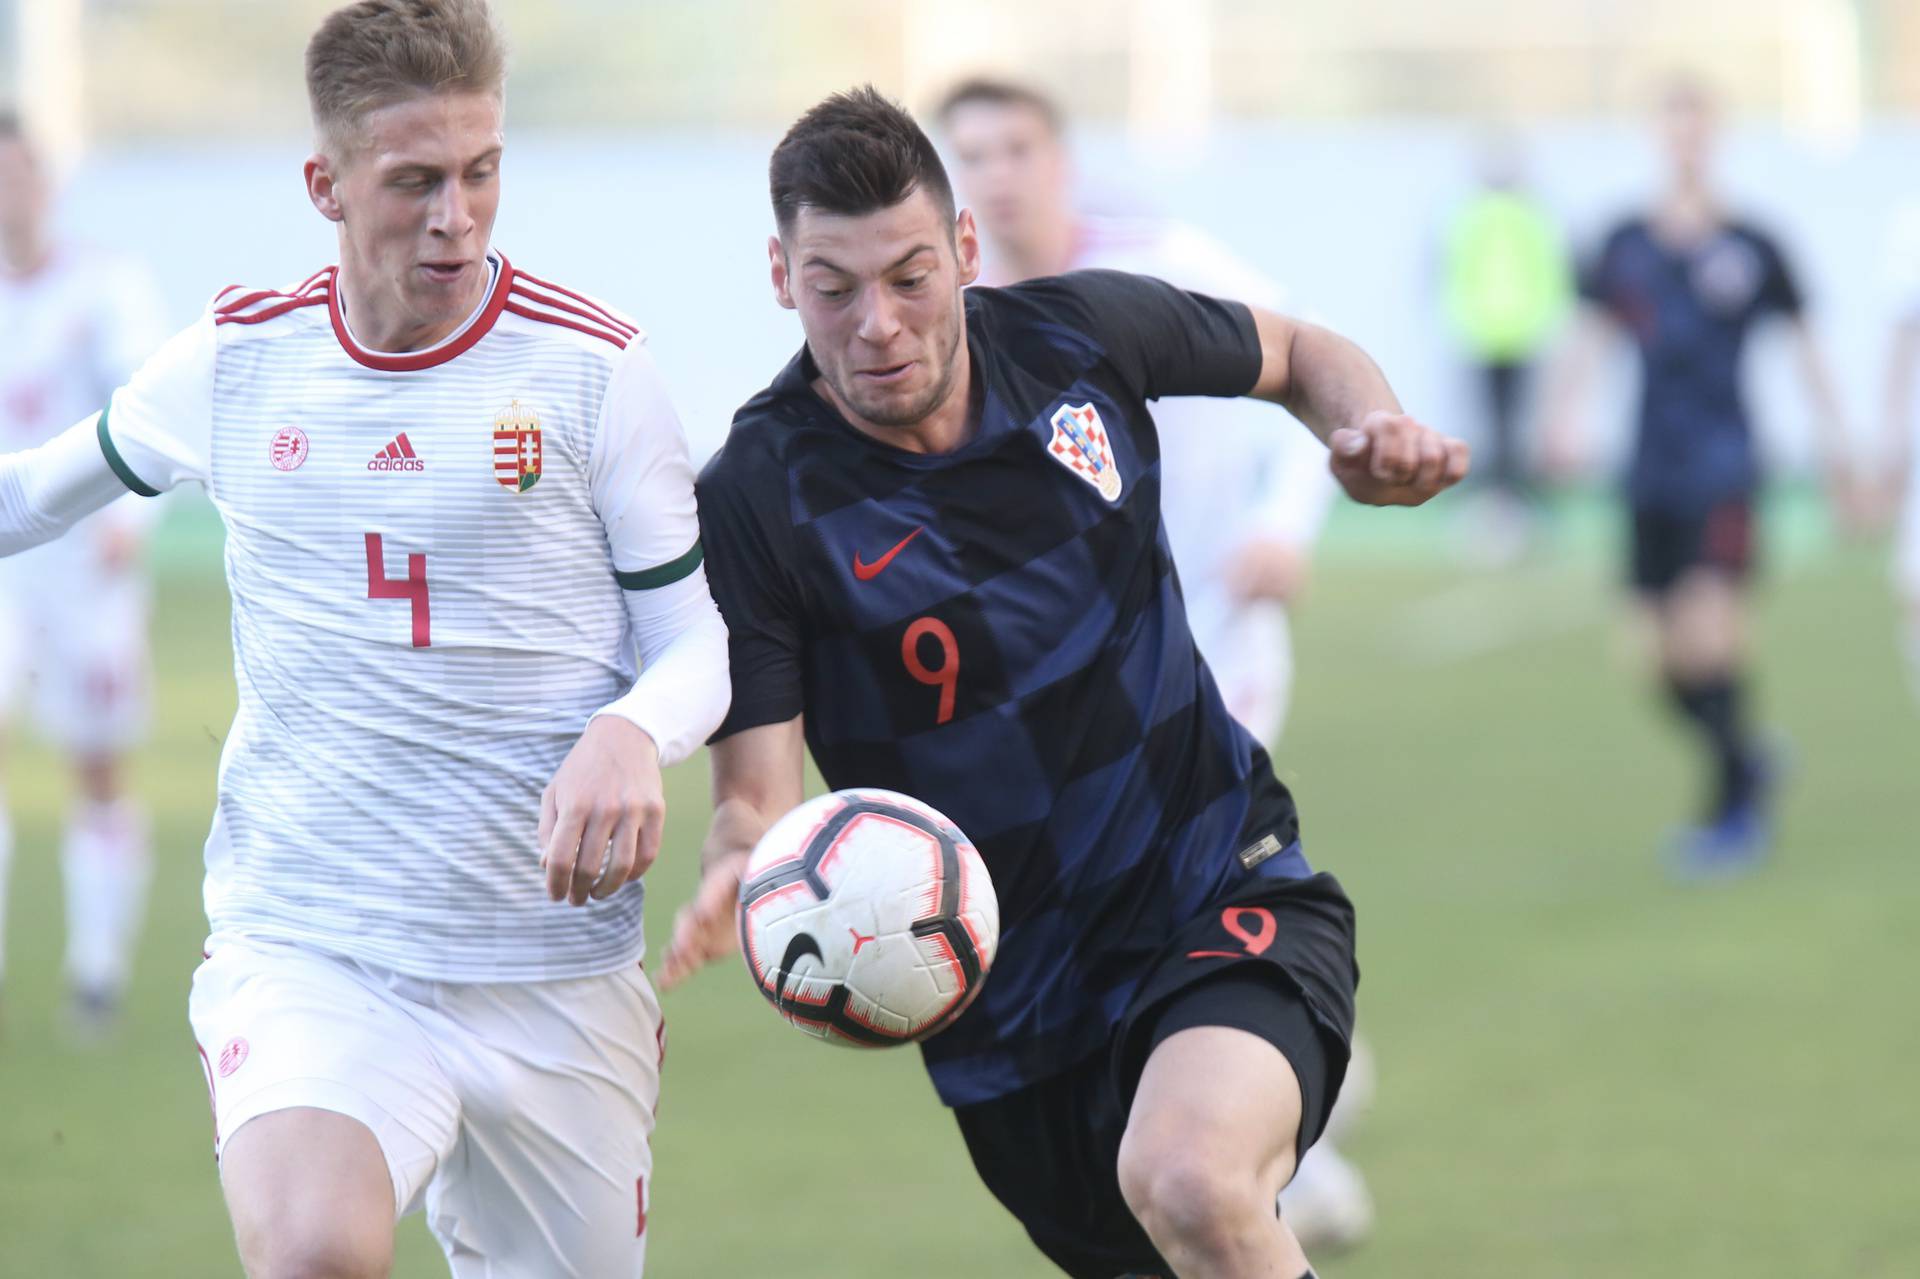 Dugopolje: UEFA U19 Elitno kolo kvalifikacija za EP, Hrvatska - Mađarska